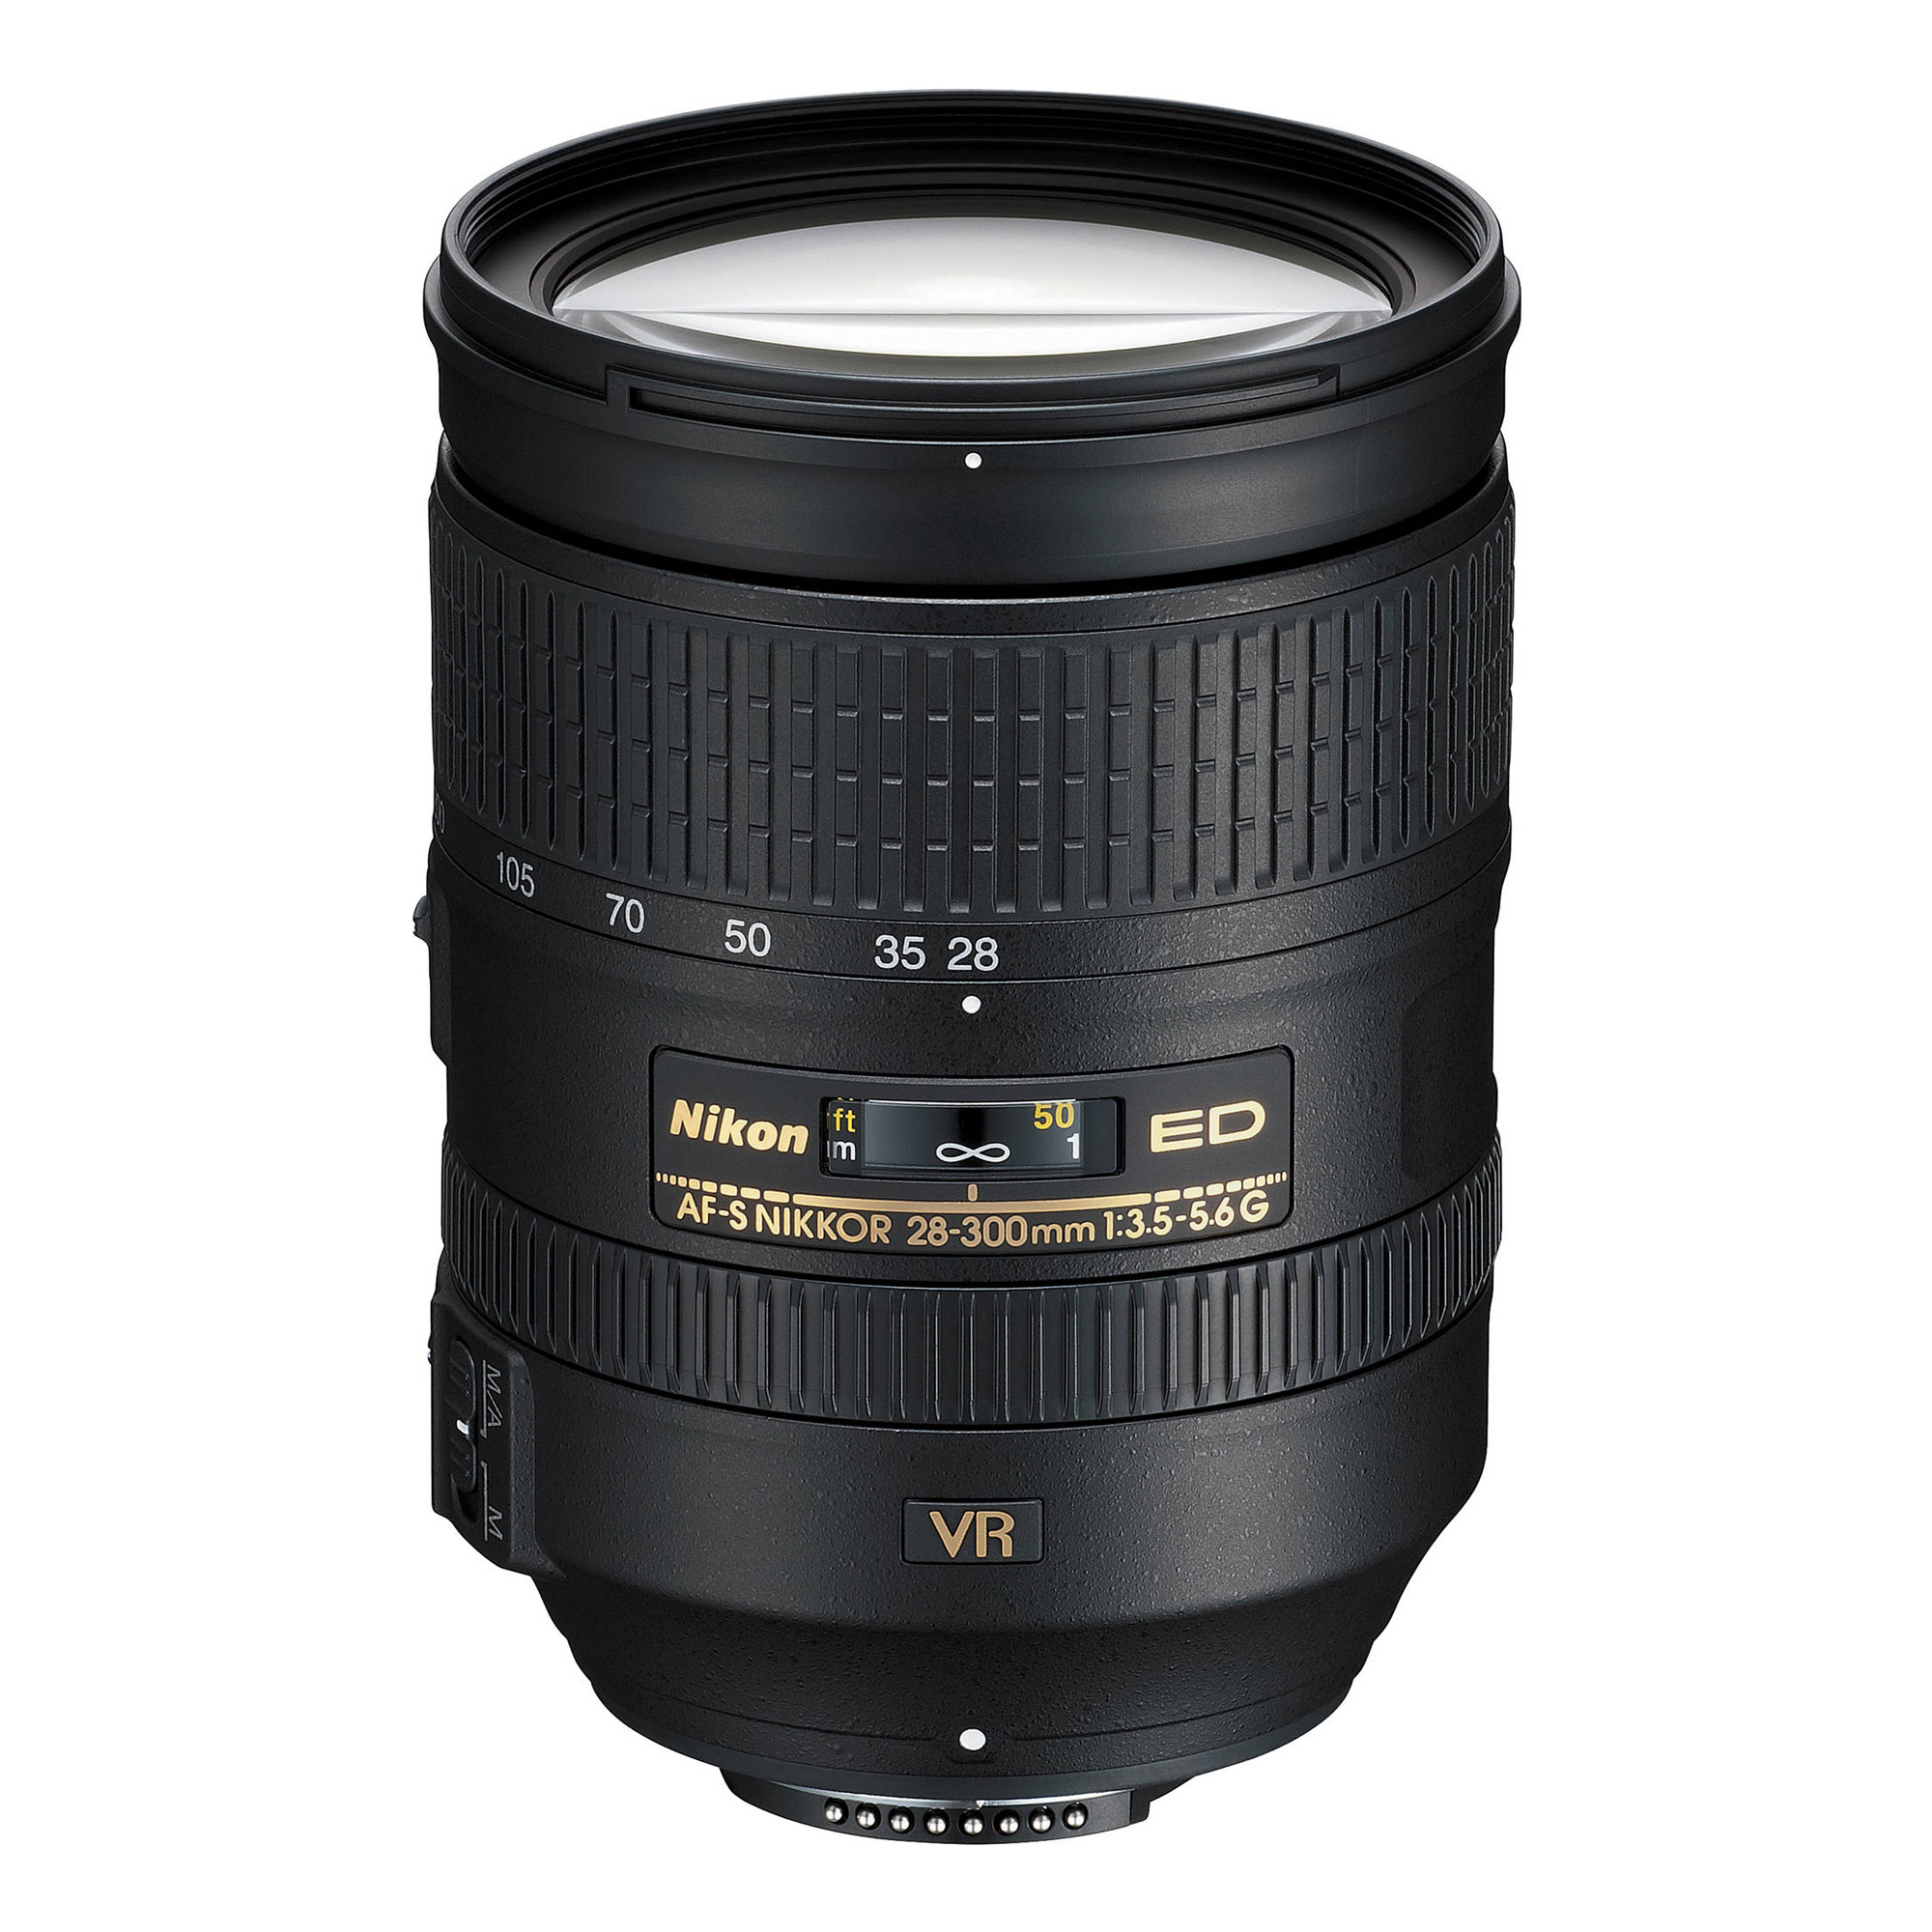 Nikon AF-S NIKKOR 28-300mm f/3.5-5.6G ED VR Zoom Lens - 第 1/1 張圖片